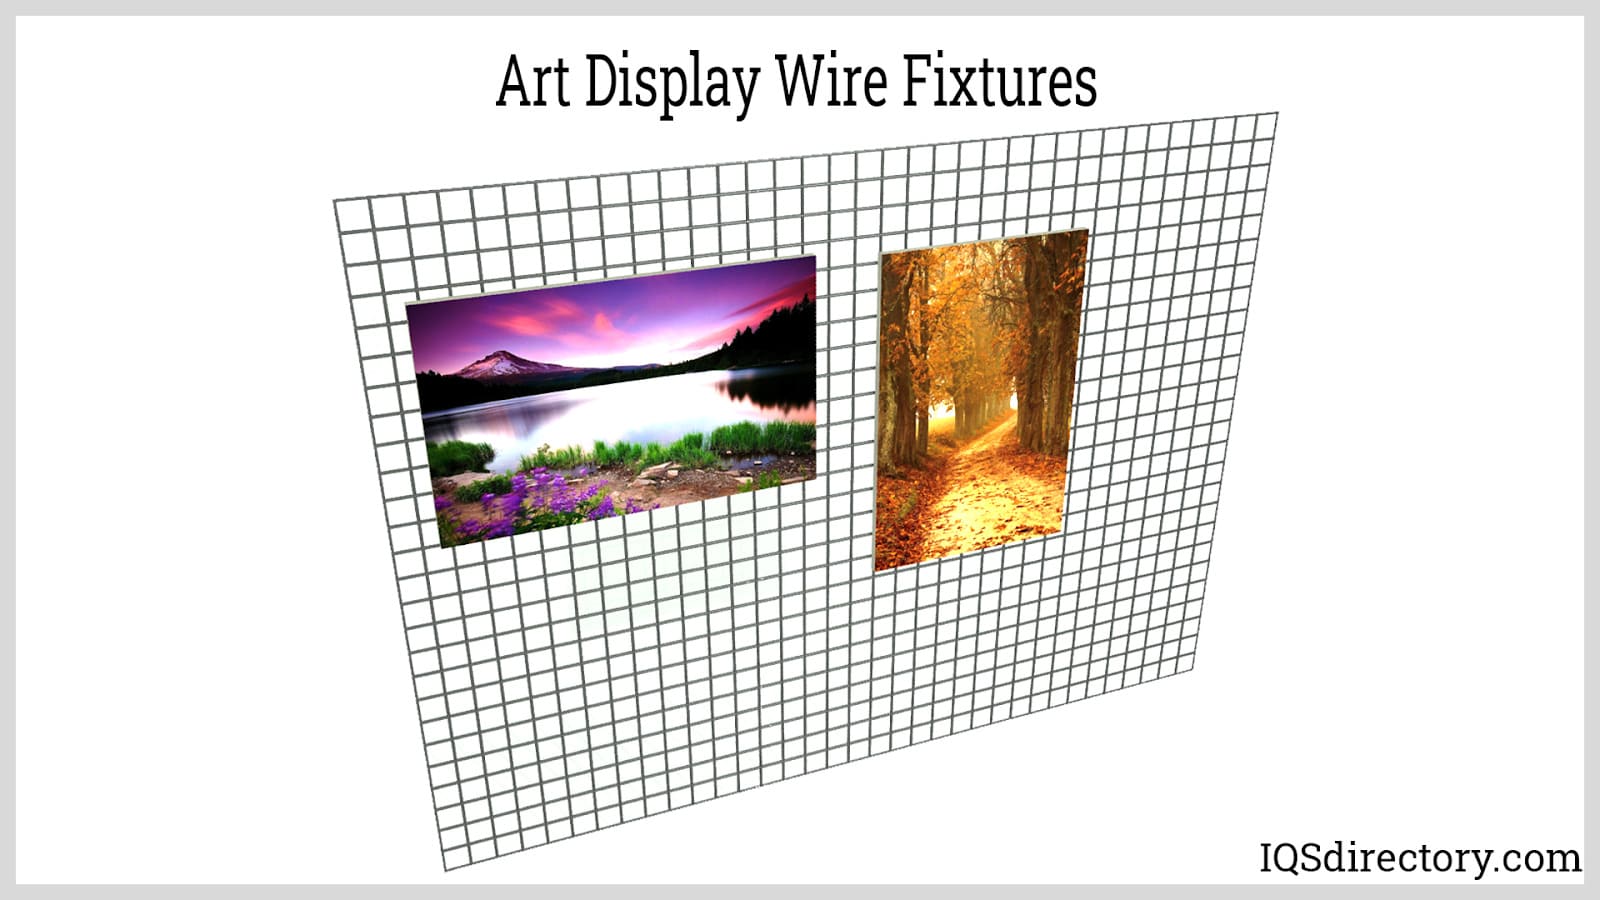 Art Display Wire Fixtures